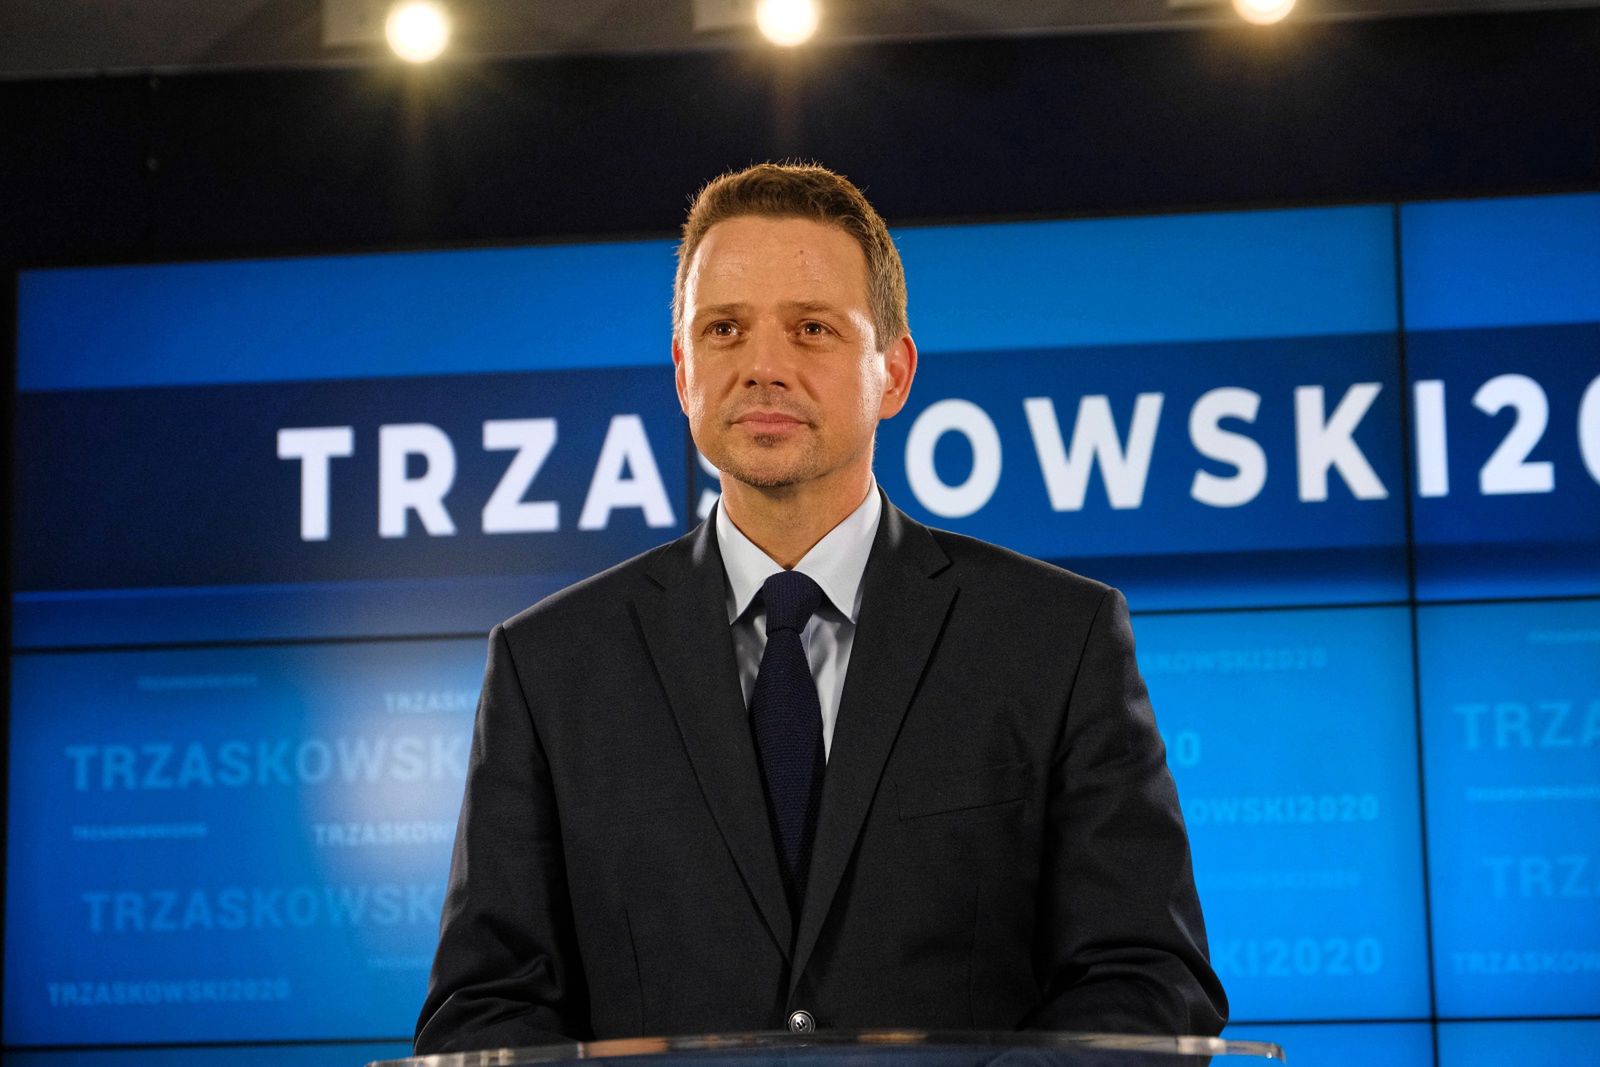 Wybory prezydenckie 2020. Rafał Trzaskowski o końcu TVP